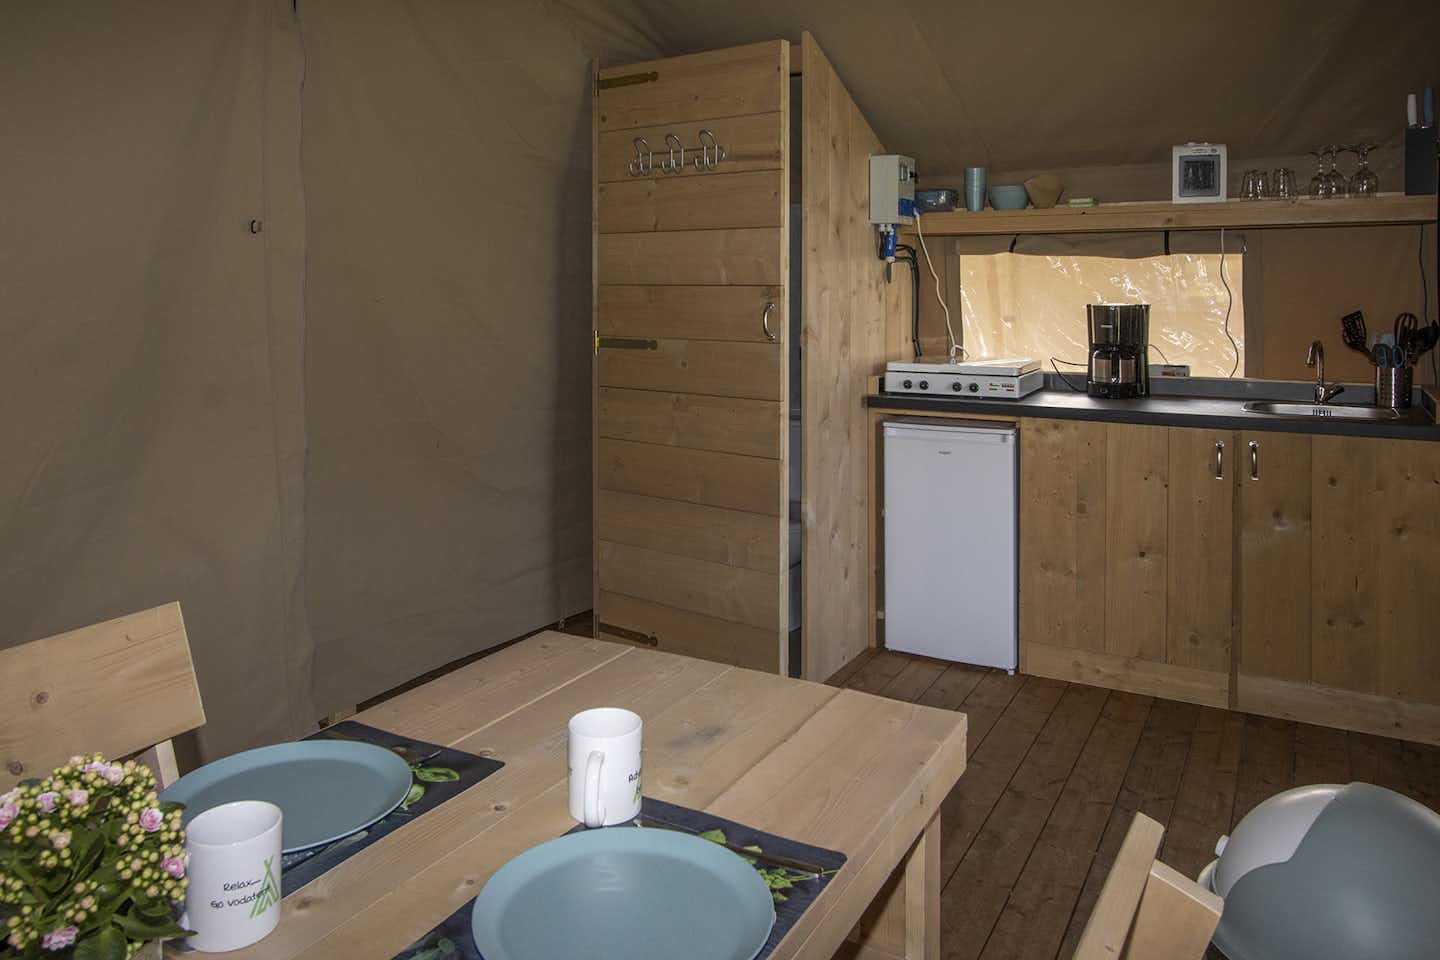 Vodatent @ Camping Catsop - Safarizelt mit Küche von innen